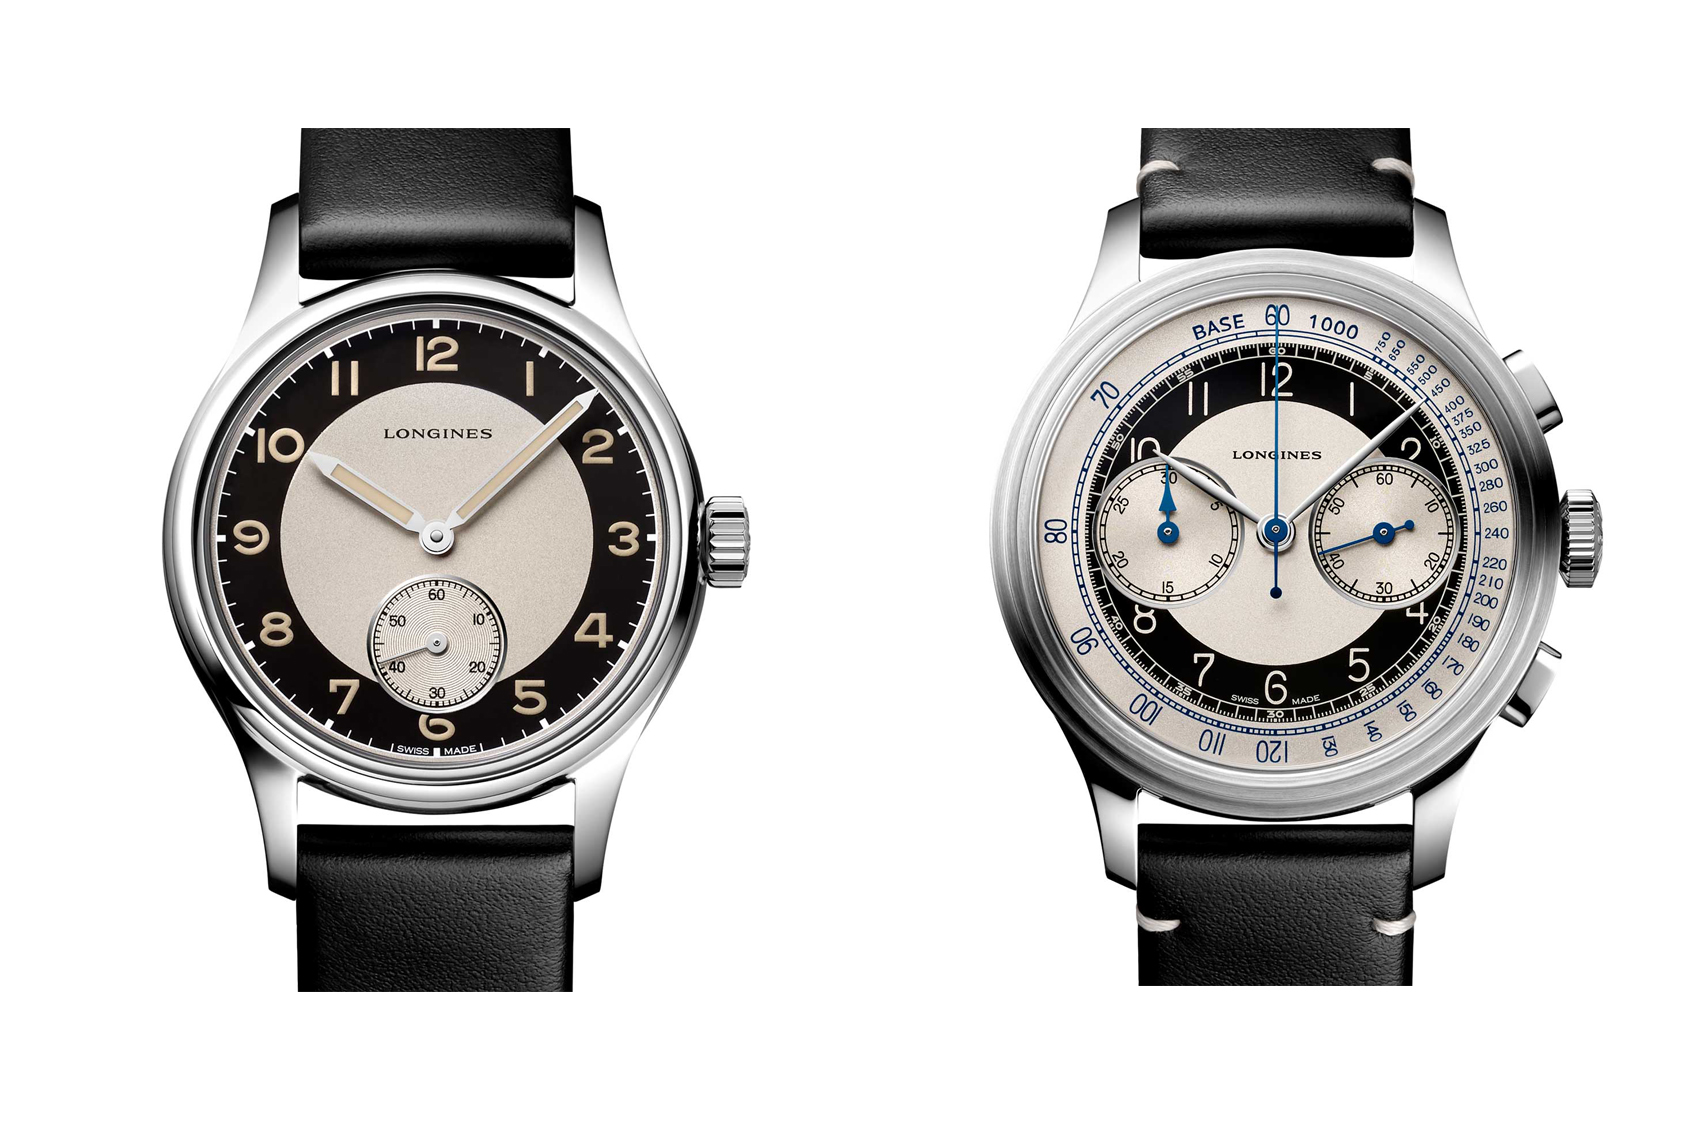 Longines tung ra hai mẫu đồng hồ mới tái hiện lịch sử trong bộ sưu tập Longines Heritage